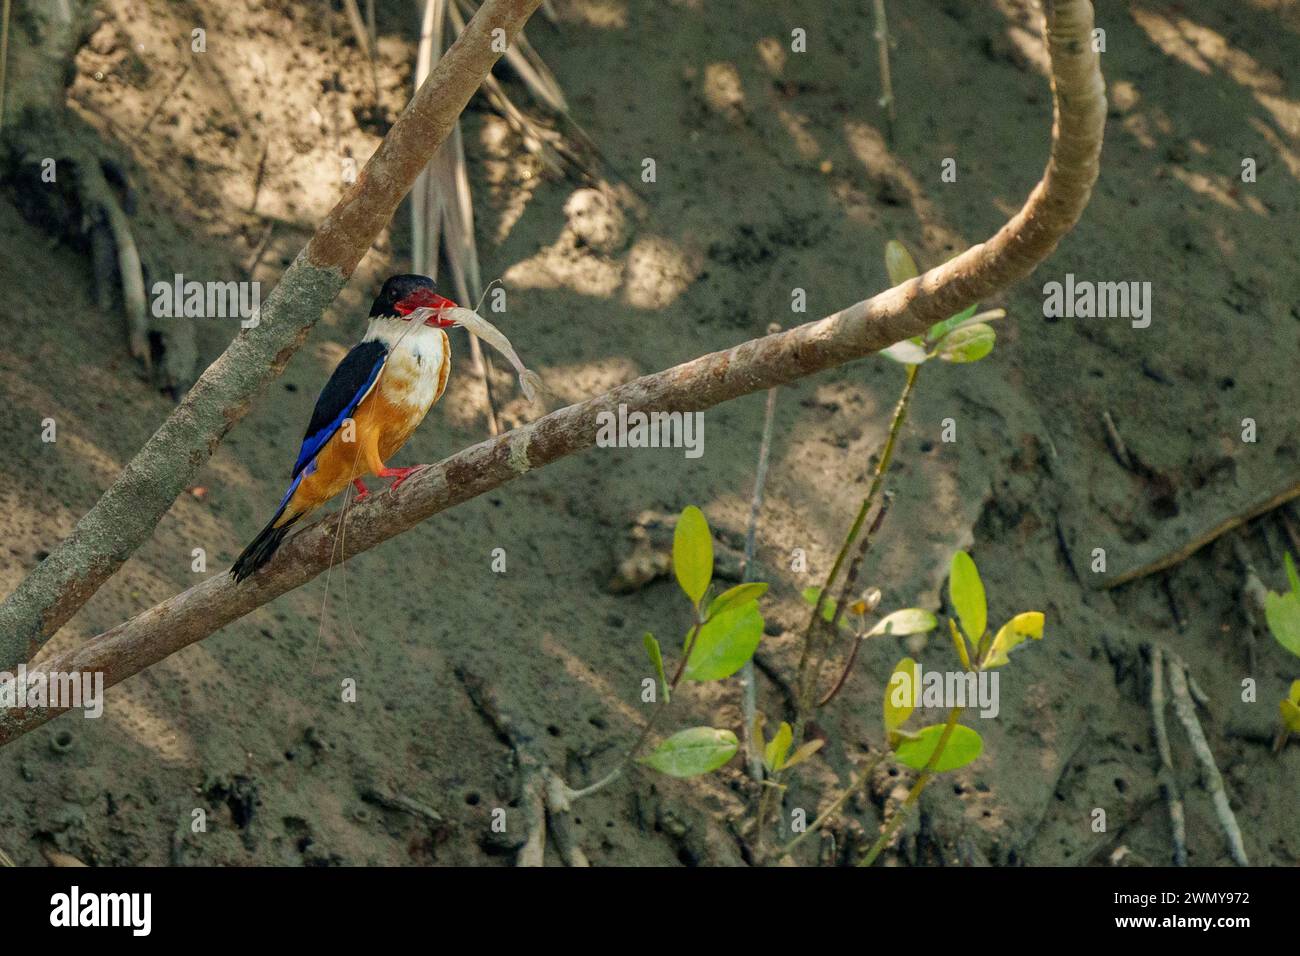 Indien, Bucht von Bengalen, Sunderbans, Mangrove, Schwarzer Eisvogel (Halcyon pileata), in der Mangrove, mit einer Garnele im Schnabel Stockfoto